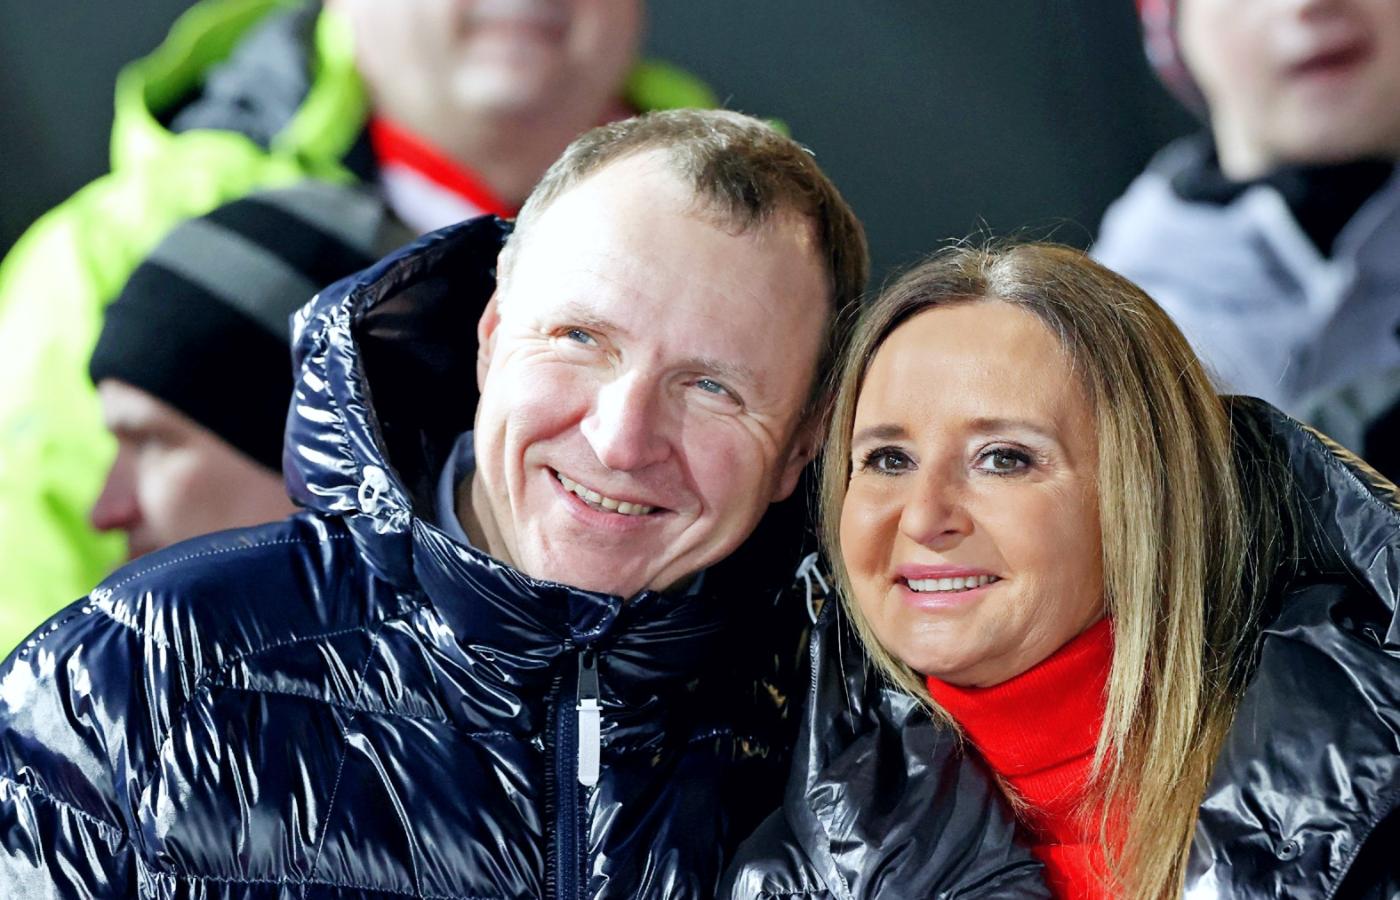 Prezes TVP Jacek Kurski z żoną na zawodach Pucharu Świata w skokach w Zakopanem w styczniu 2020 r. Na następne się chyba nie wybierze.